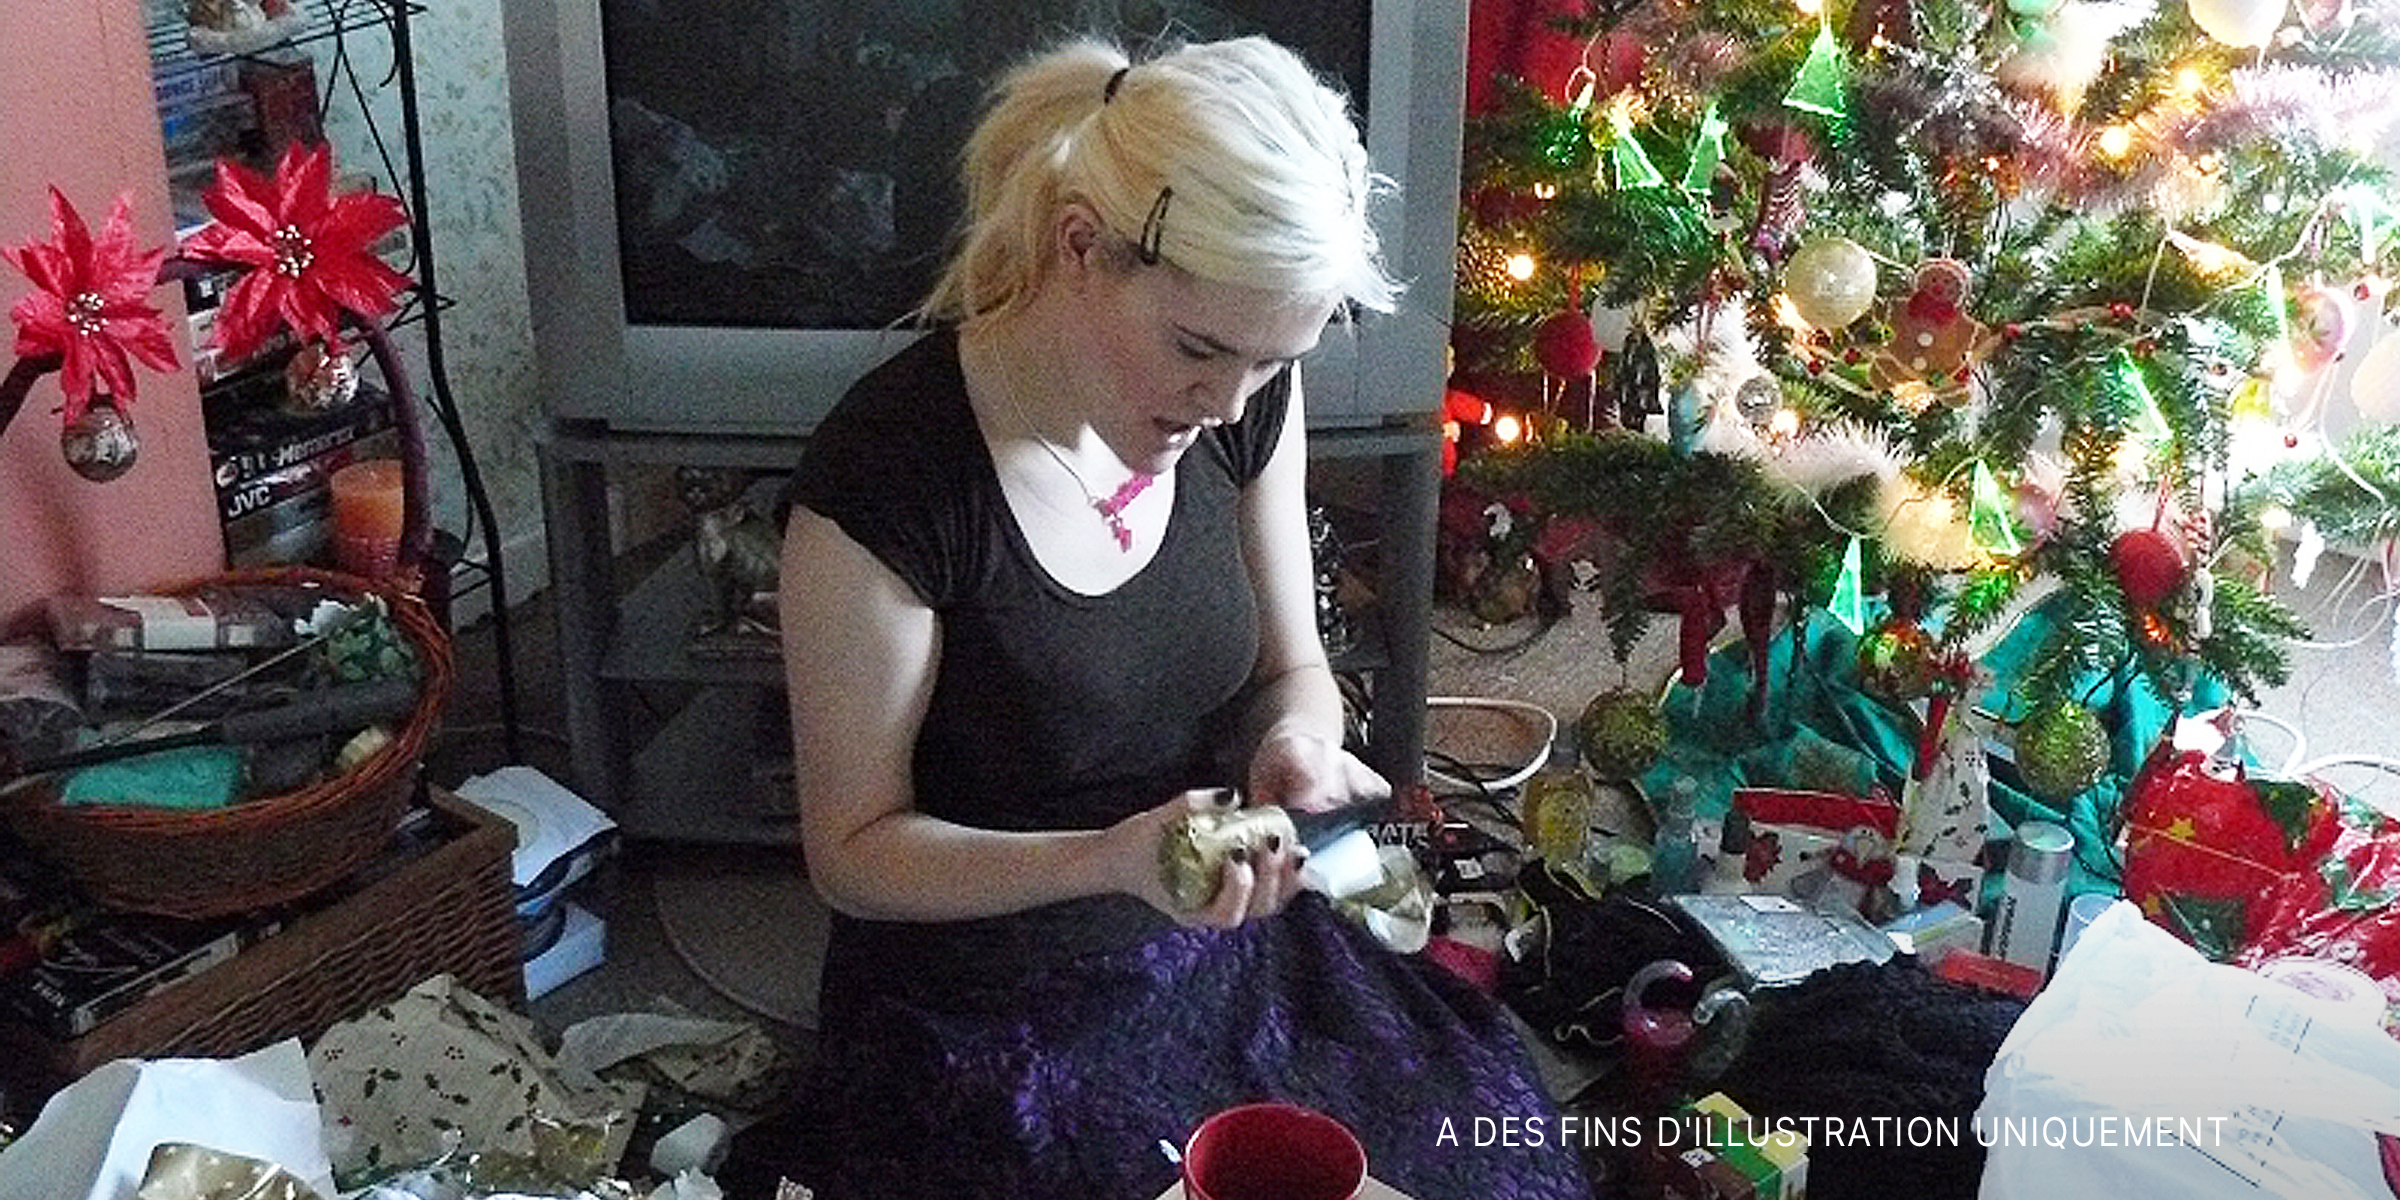 Une jeune femme déballe un cadeau de Noël | Source : Flickr.com/flem007_uk/CC BY-ND 2.0